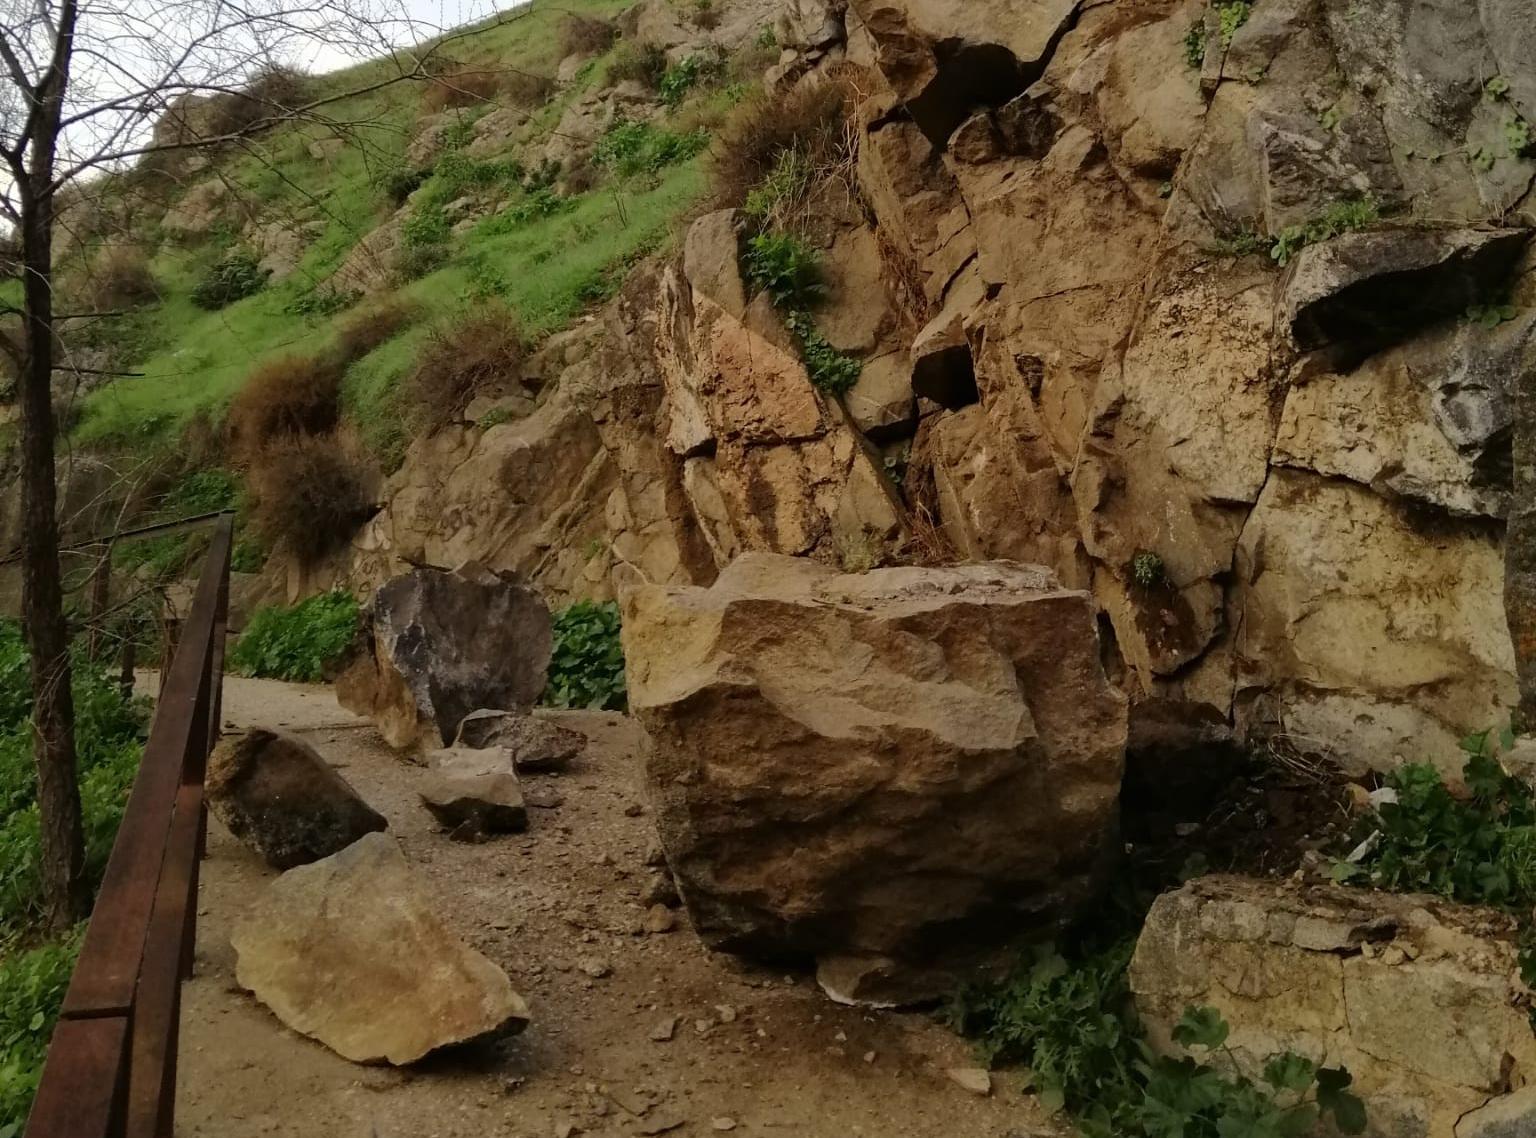 Imagen de las piedras caídas en la senda ecológica.